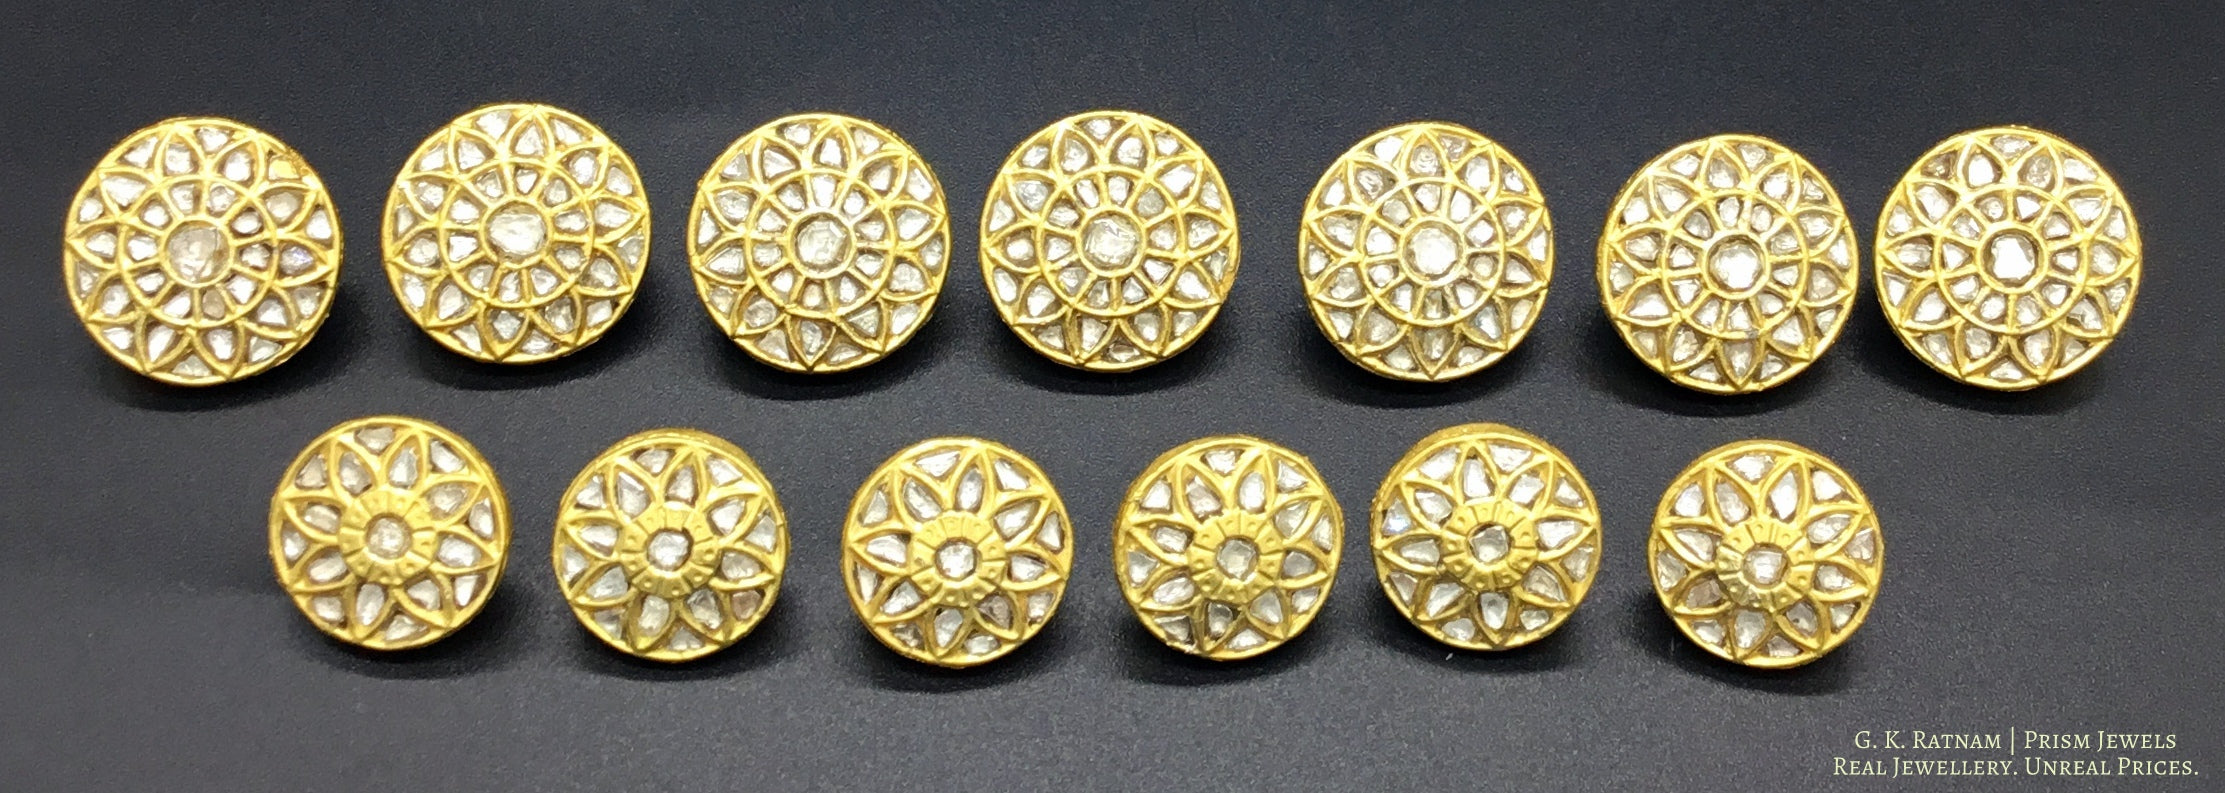 23k Gold and Diamond Polki all-white Sherwani Buttons for Men - G. K. Ratnam